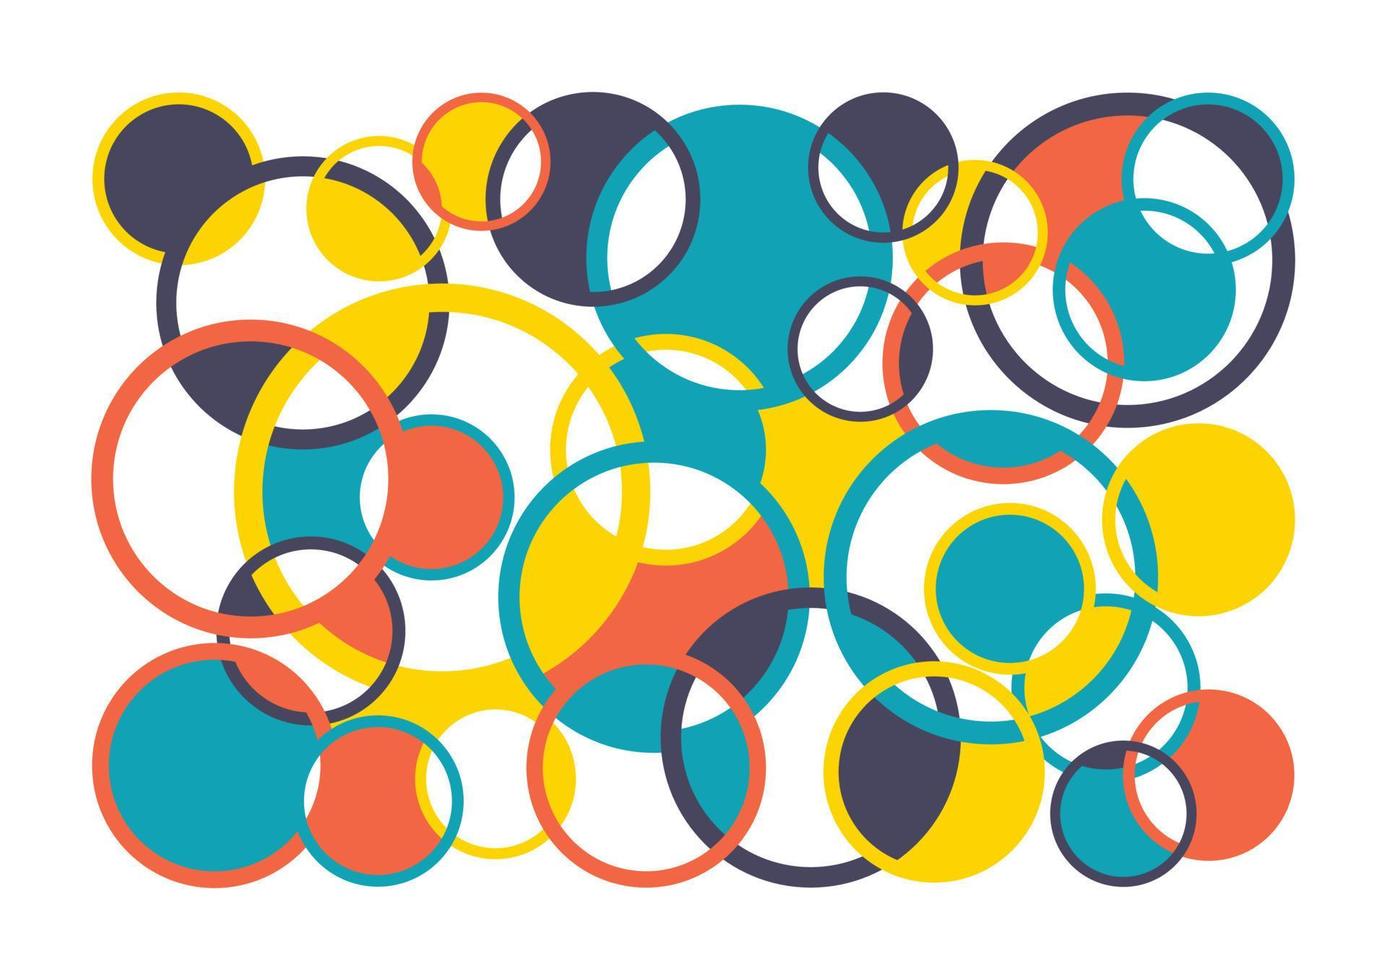 vetor moderno abstrato geométrico com círculos e semicírculos em estilo retrô escandinavo. padrão gráfico de formas simples de cor pastel. abstração.